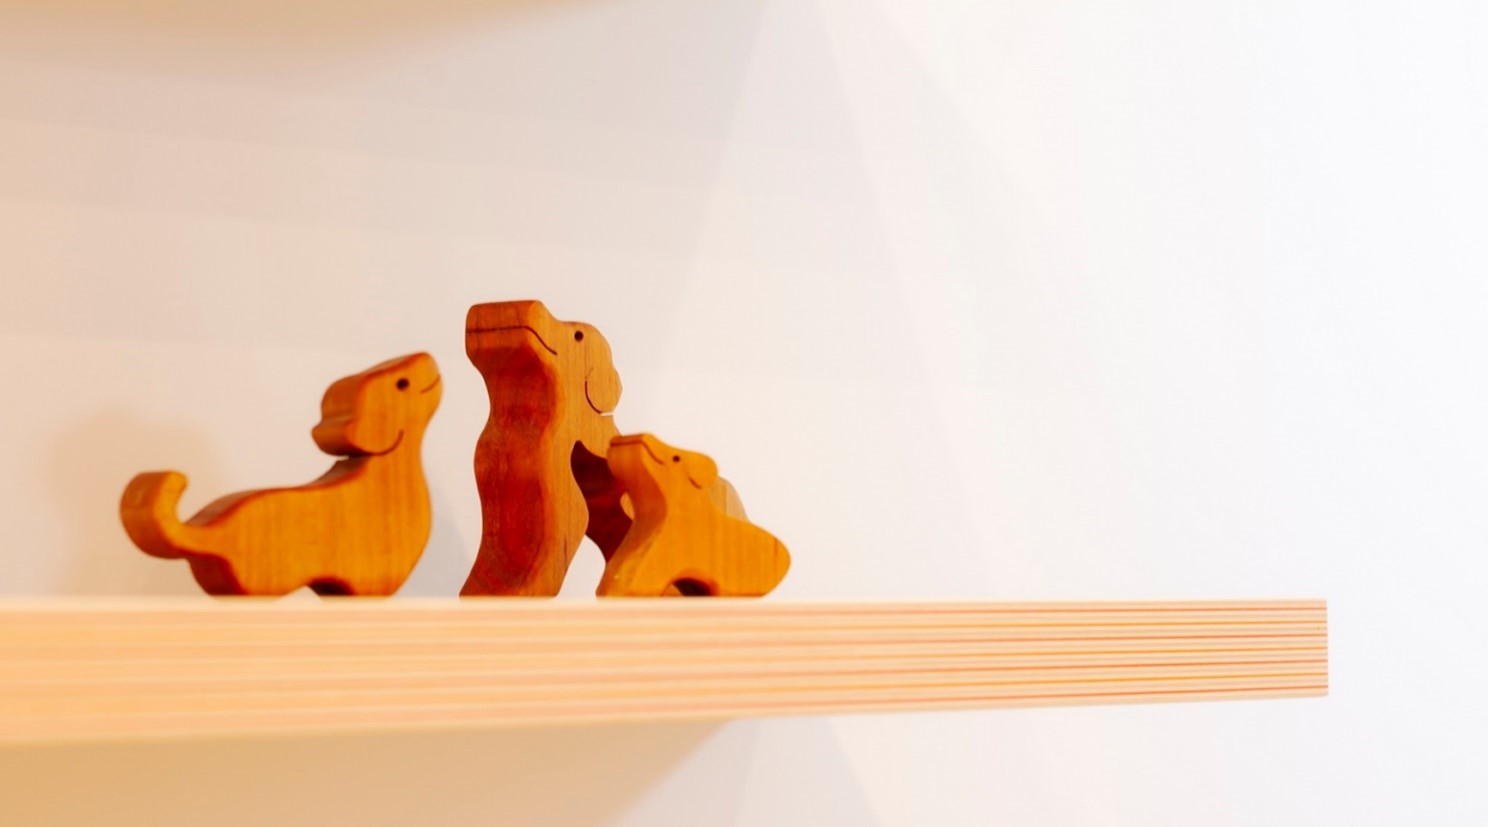 木彫りの犬が3匹寄り添っている画像